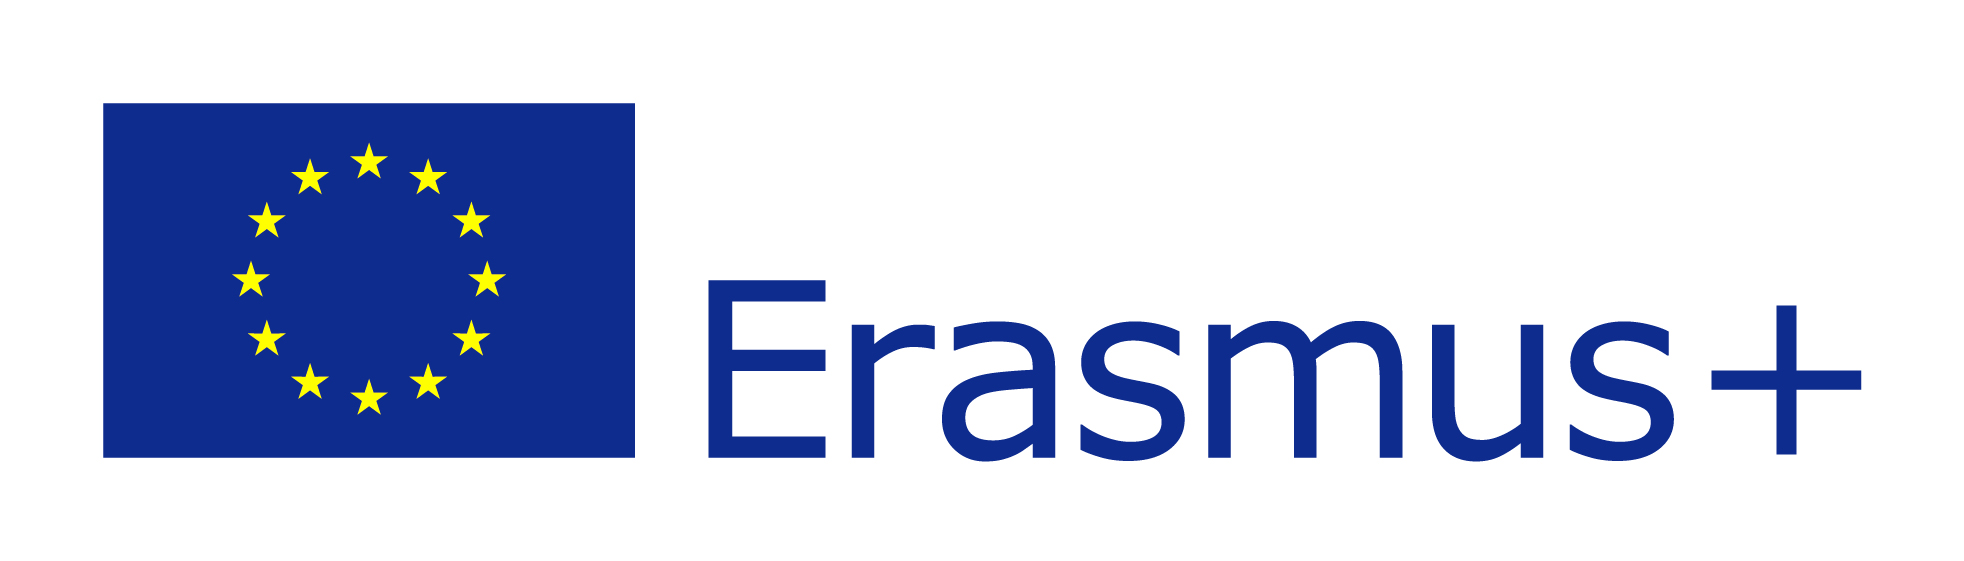 EU20flag Erasmus2B vect POS